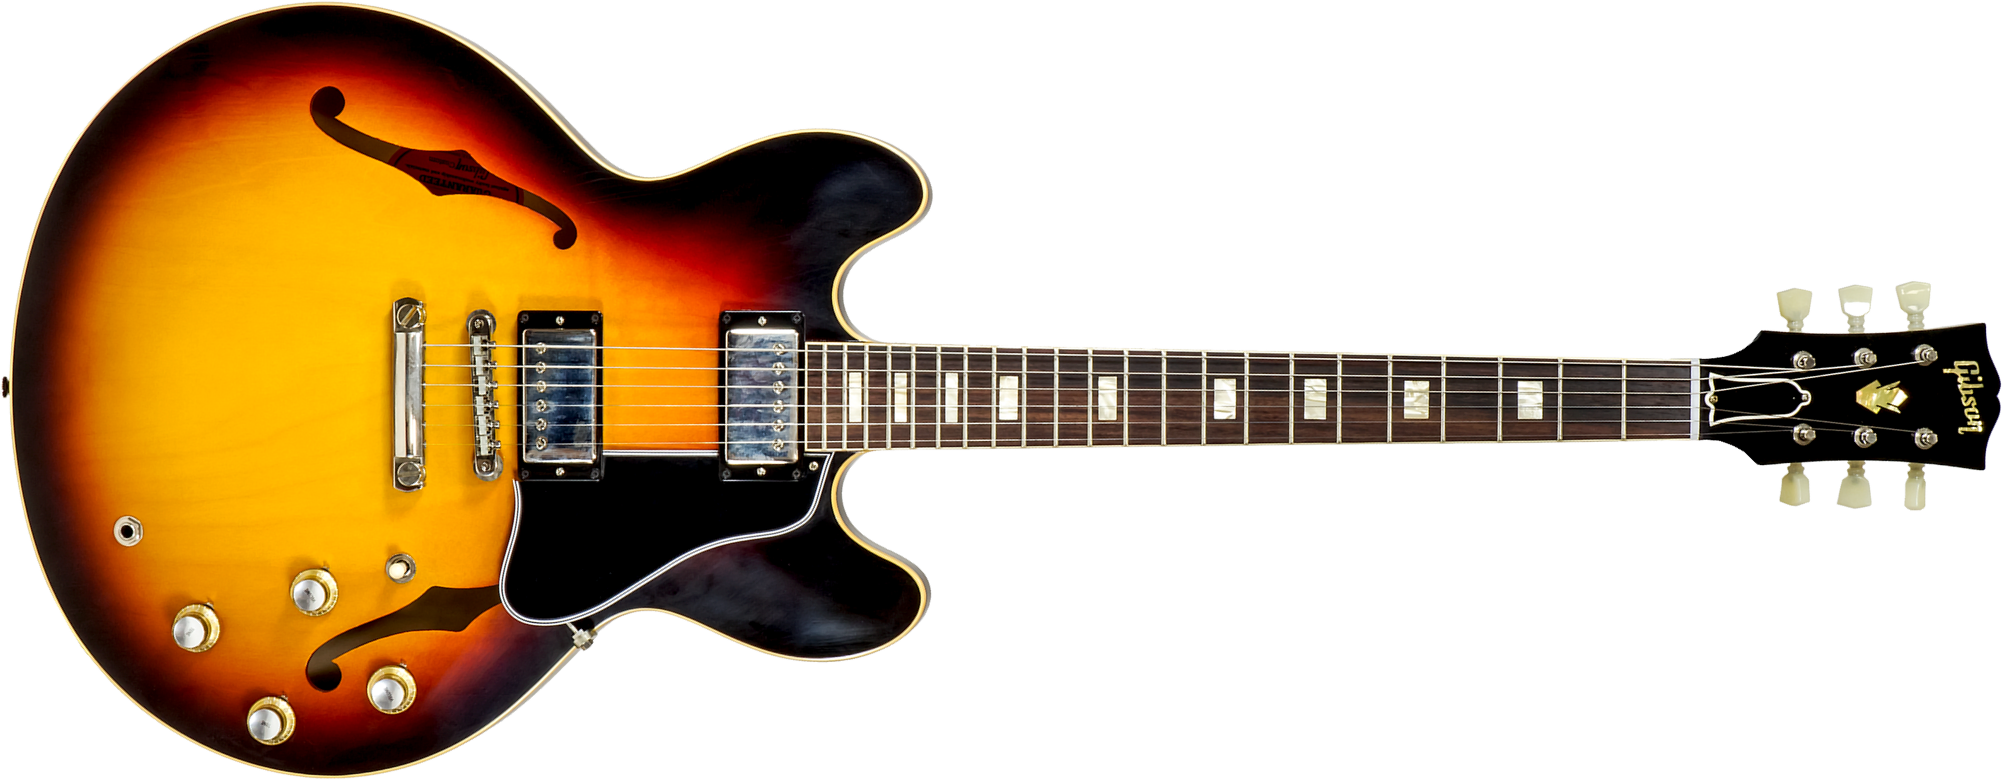 Gibson Custom Shop M2m Es-335 1964 2h Ht Rw #130446 - Murphy Lab Light Aged Vintage Burst - Guitare Électrique 1/2 Caisse - Main picture